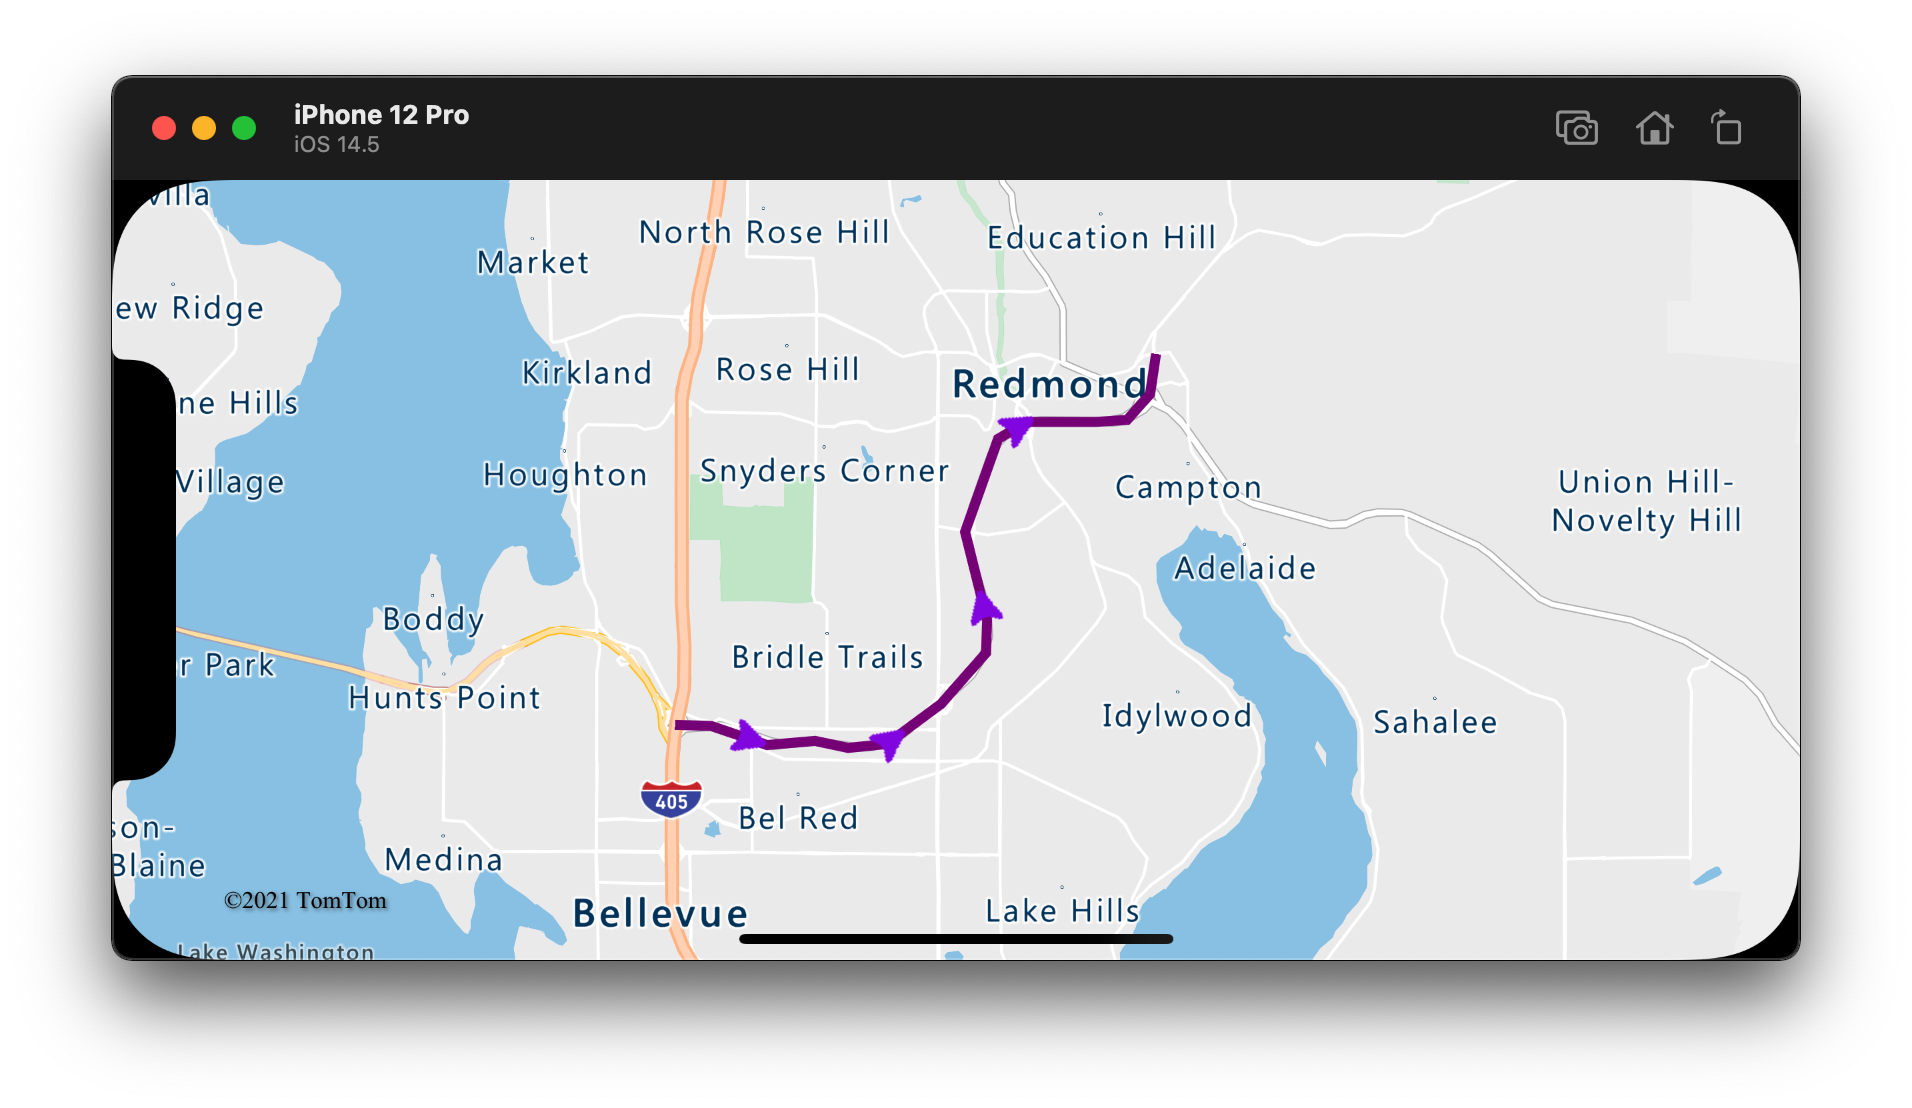 Čára s fialovými šipkami zobrazená podél ní ukazující ve směru trasy.